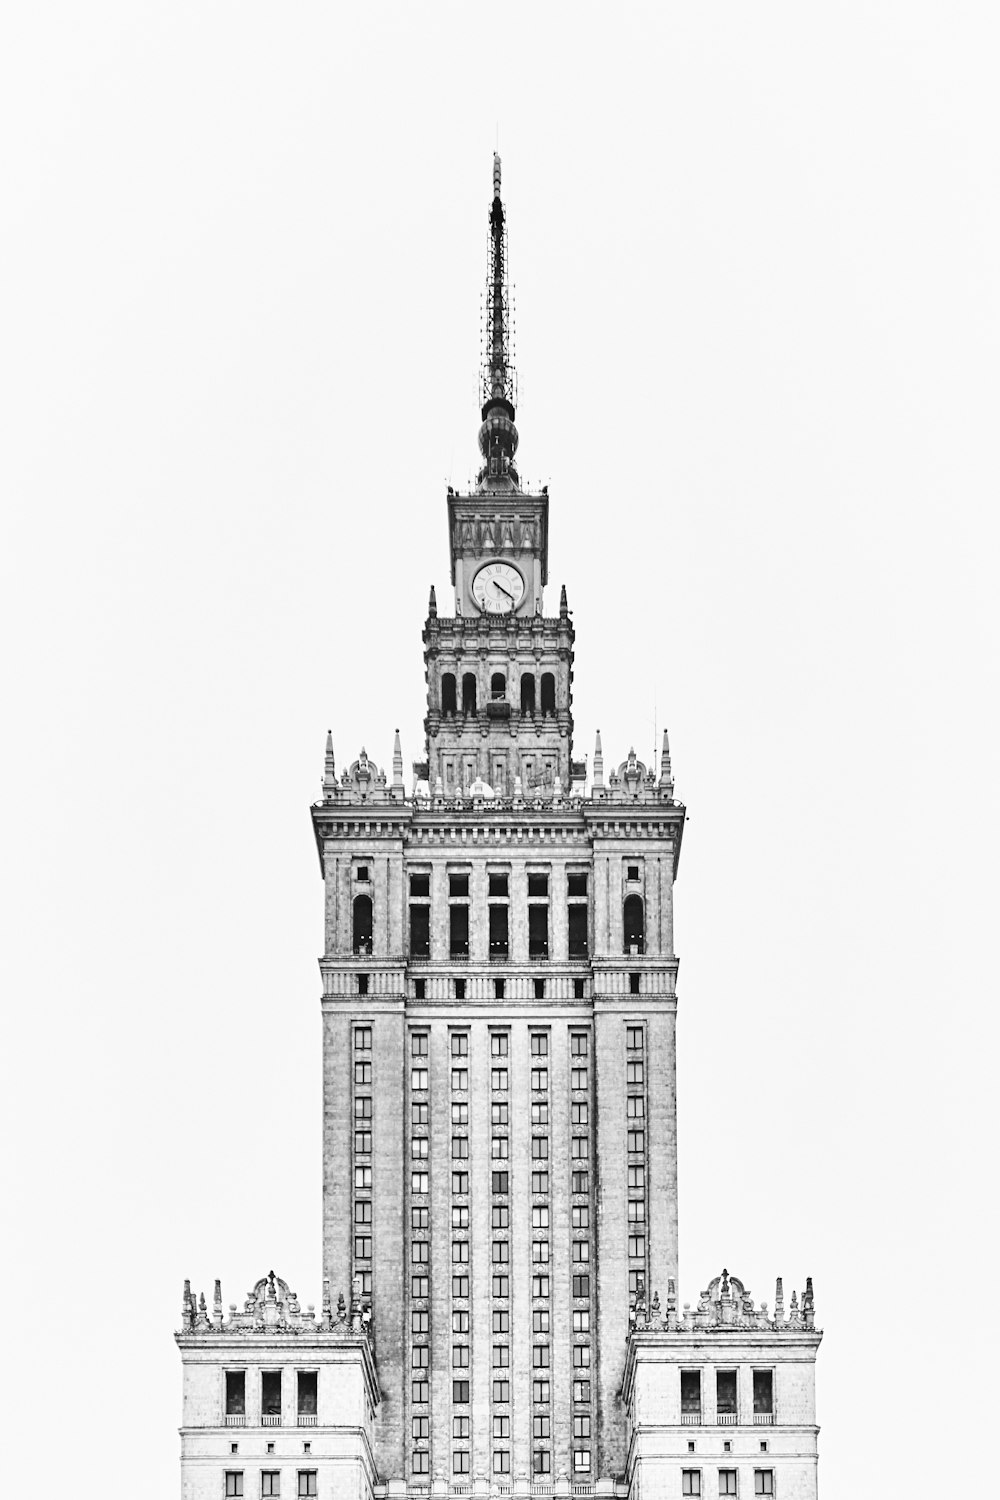 photo en niveaux de gris de l’horloge de la tour en béton gothique